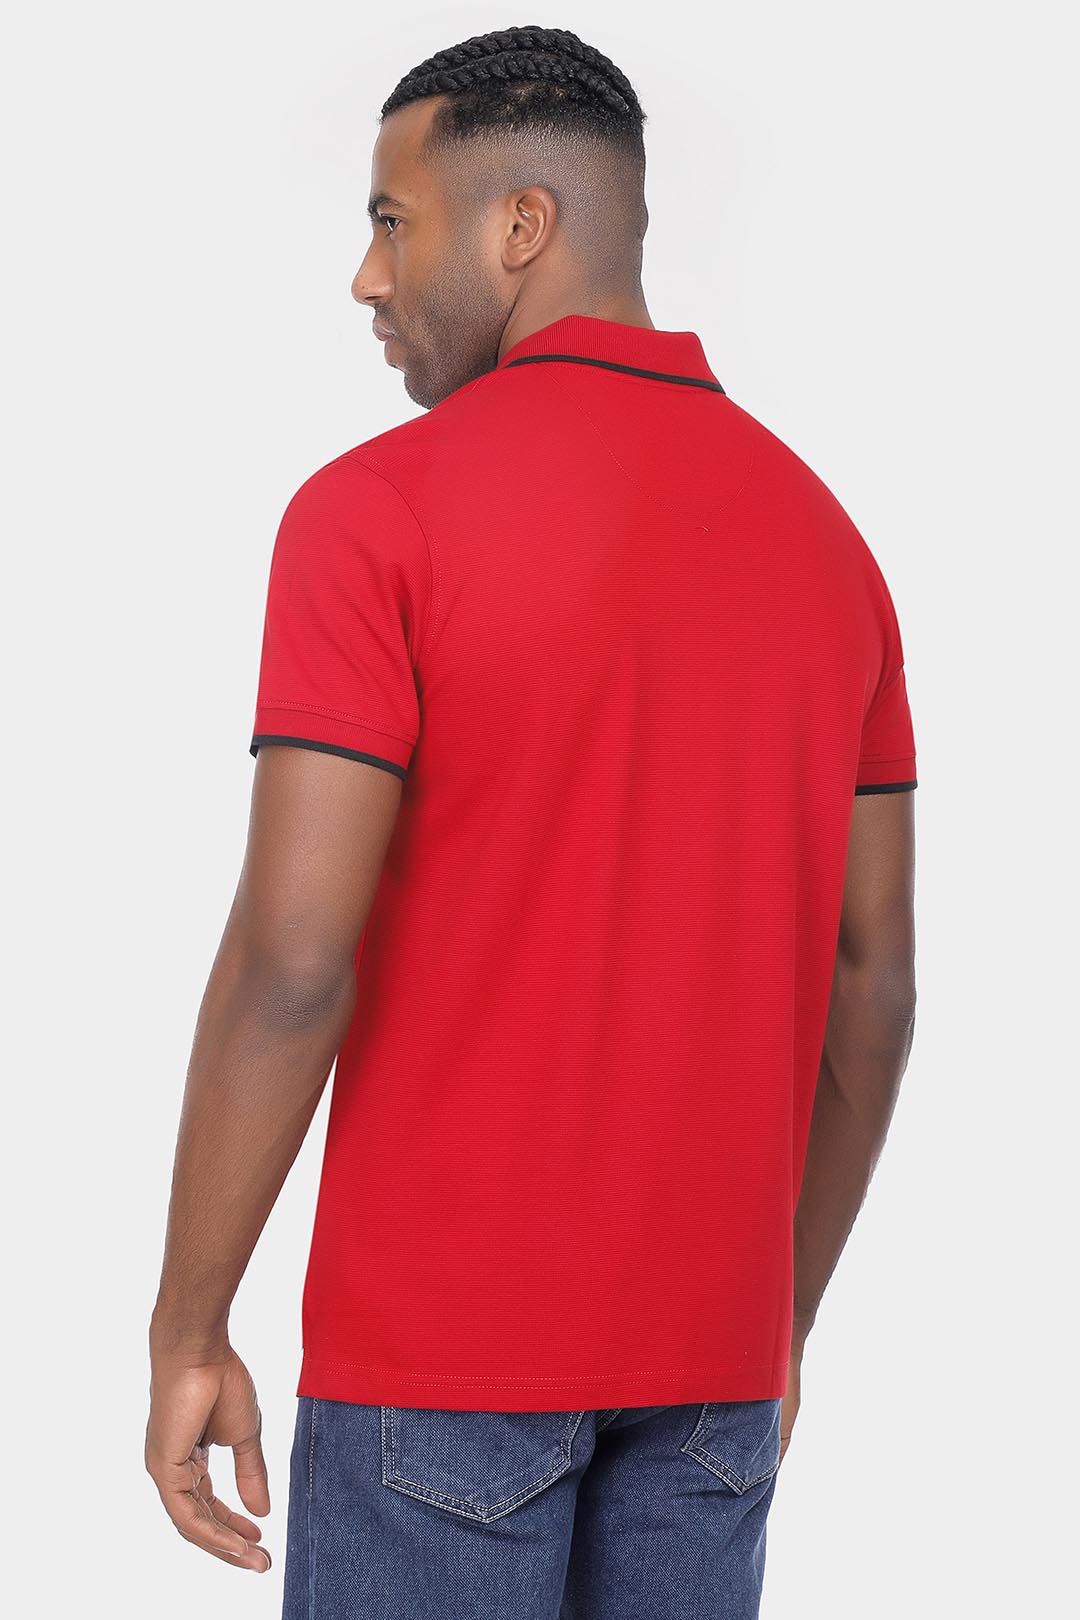 Red Zipper Polo Shirt